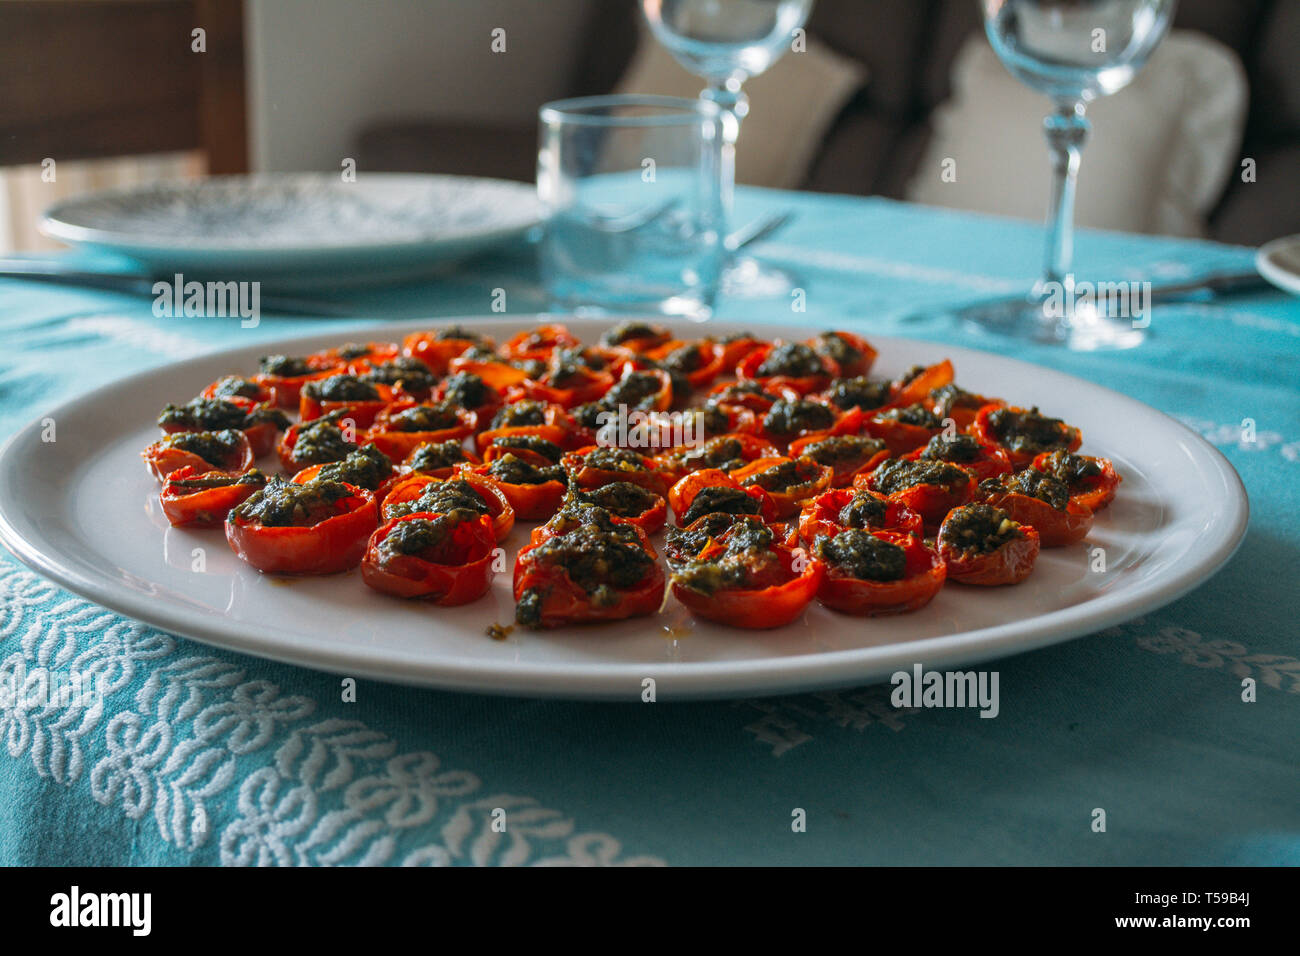 Pomodori ciliegia cotta con salsa verde su un piatto bianco sulla tovaglia turchese Foto Stock